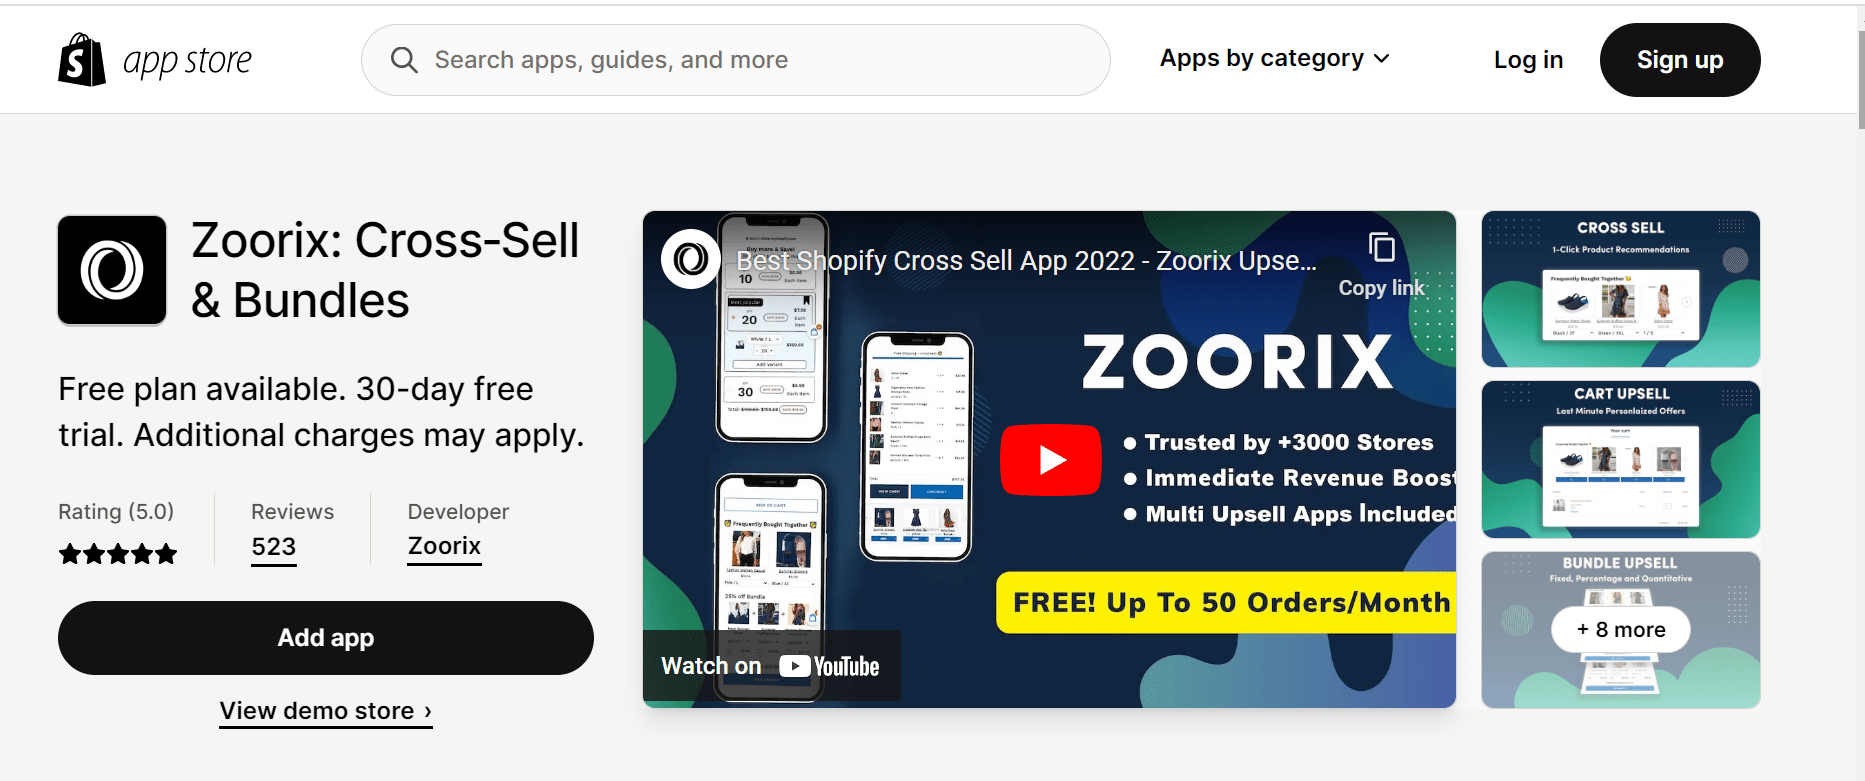 Zoorix 交叉销售应用程序